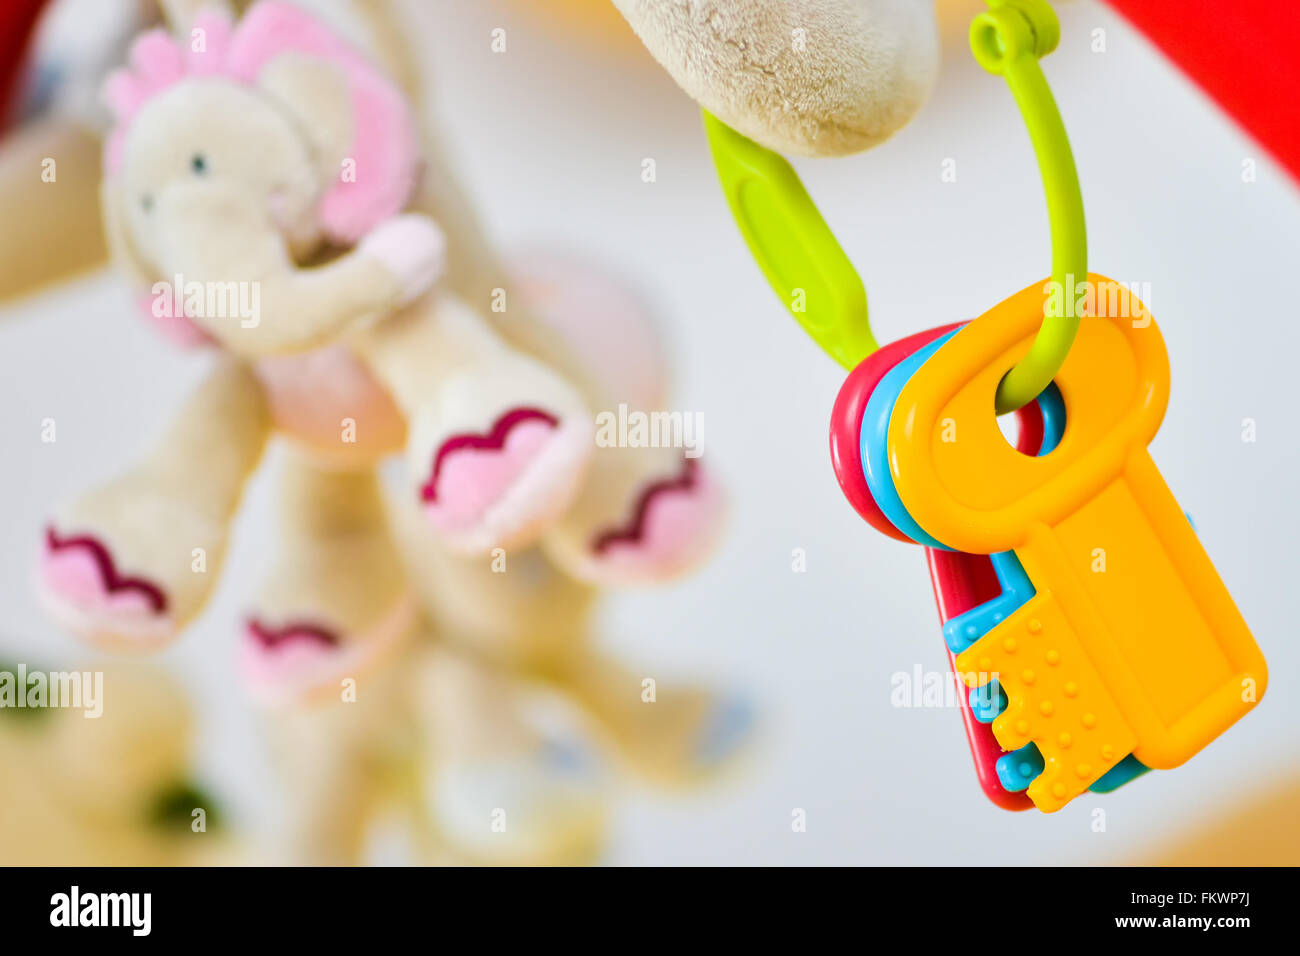 Différentes touches colorées toy with elephant en arrière-plan Banque D'Images